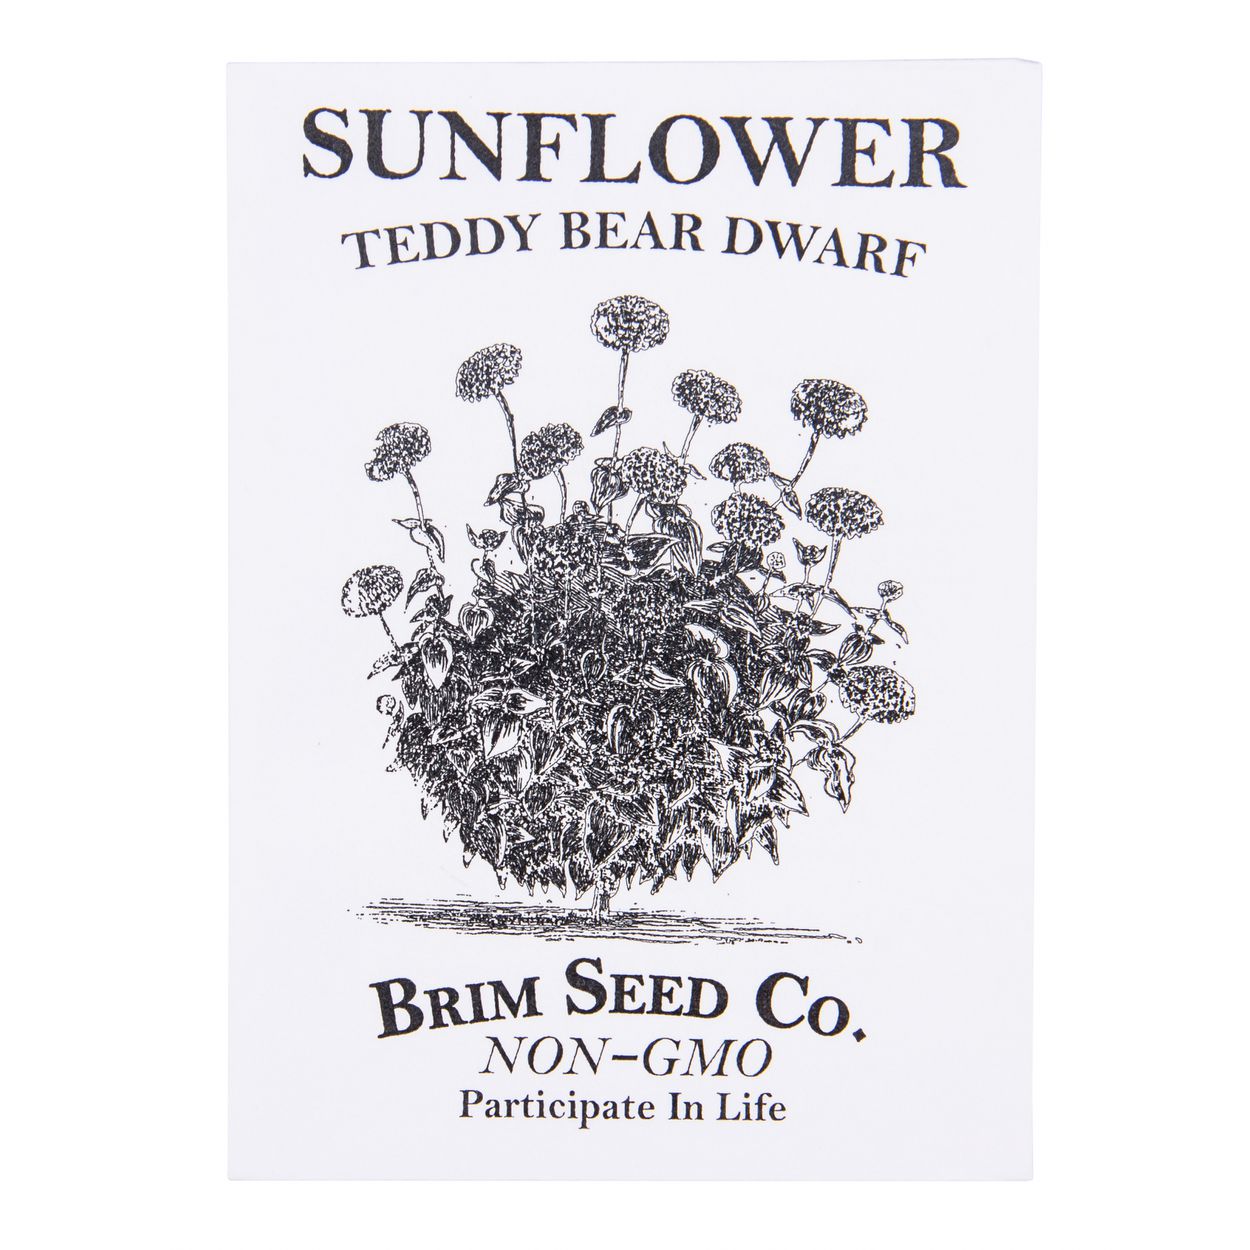 Brim Seed Co. - Teddy Bear Dwarf Sunflower Seed